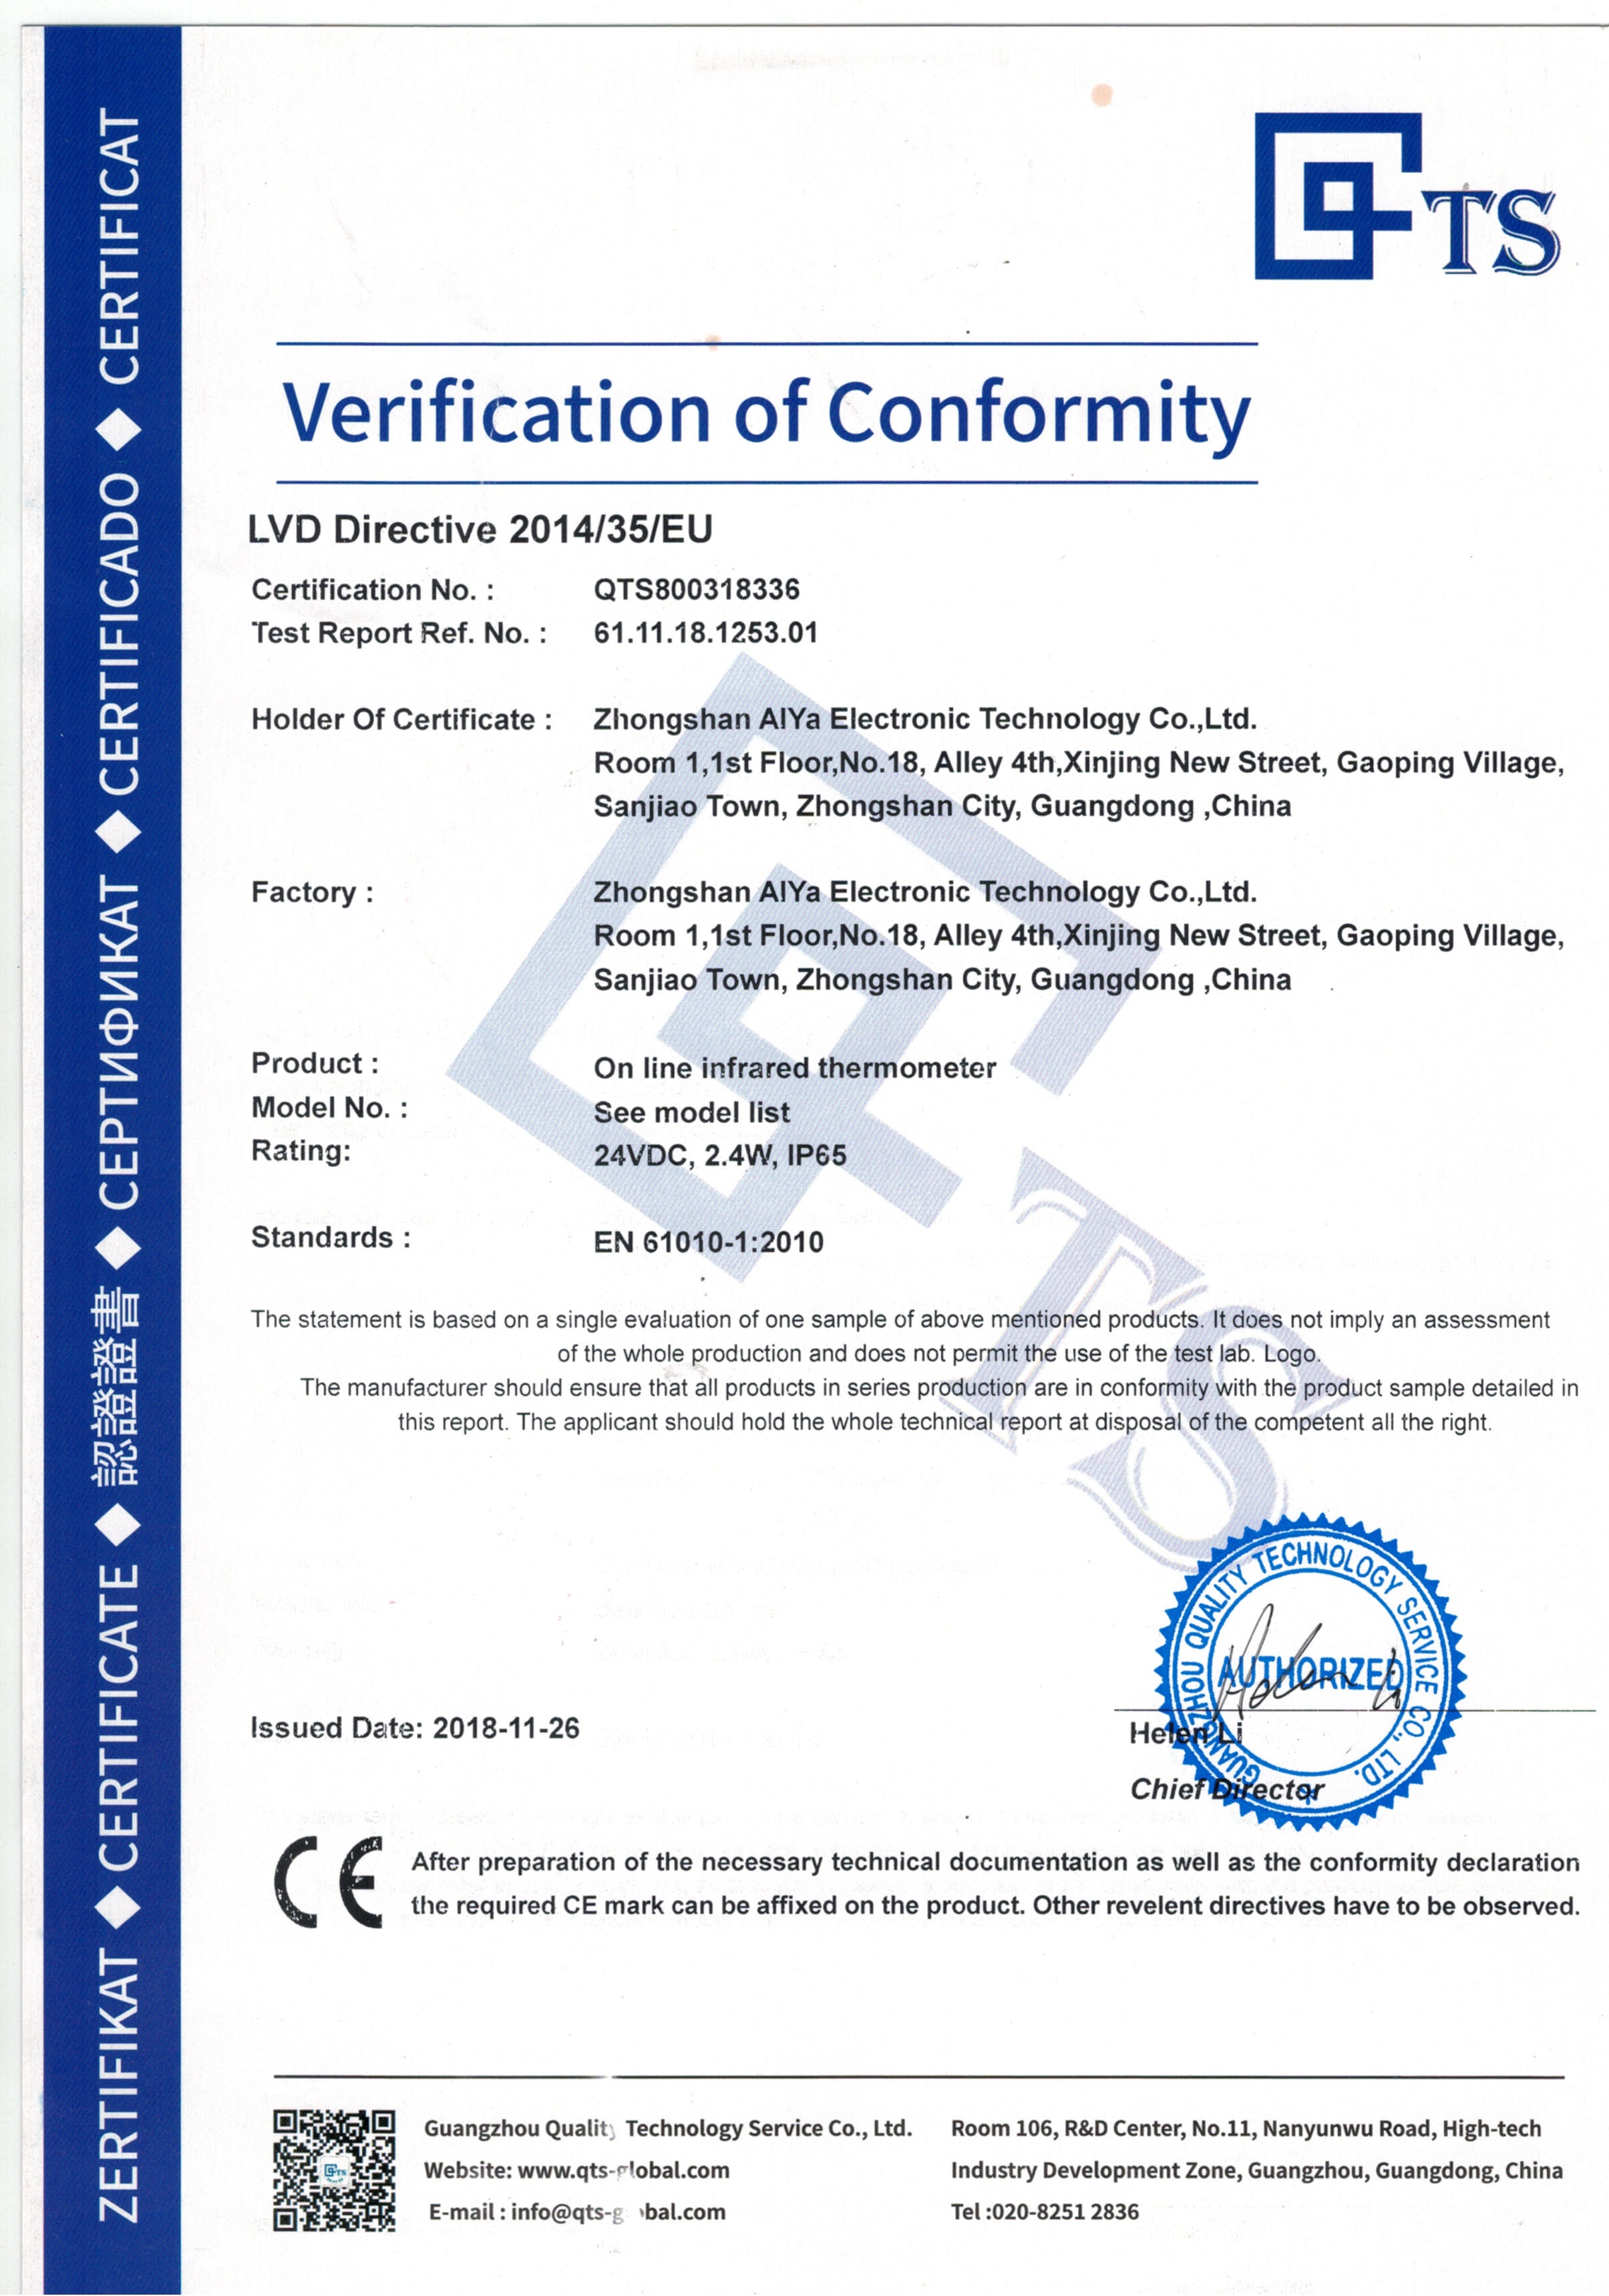 广州华洪聚焦红外测温仪IS-CF系列获得CE证书